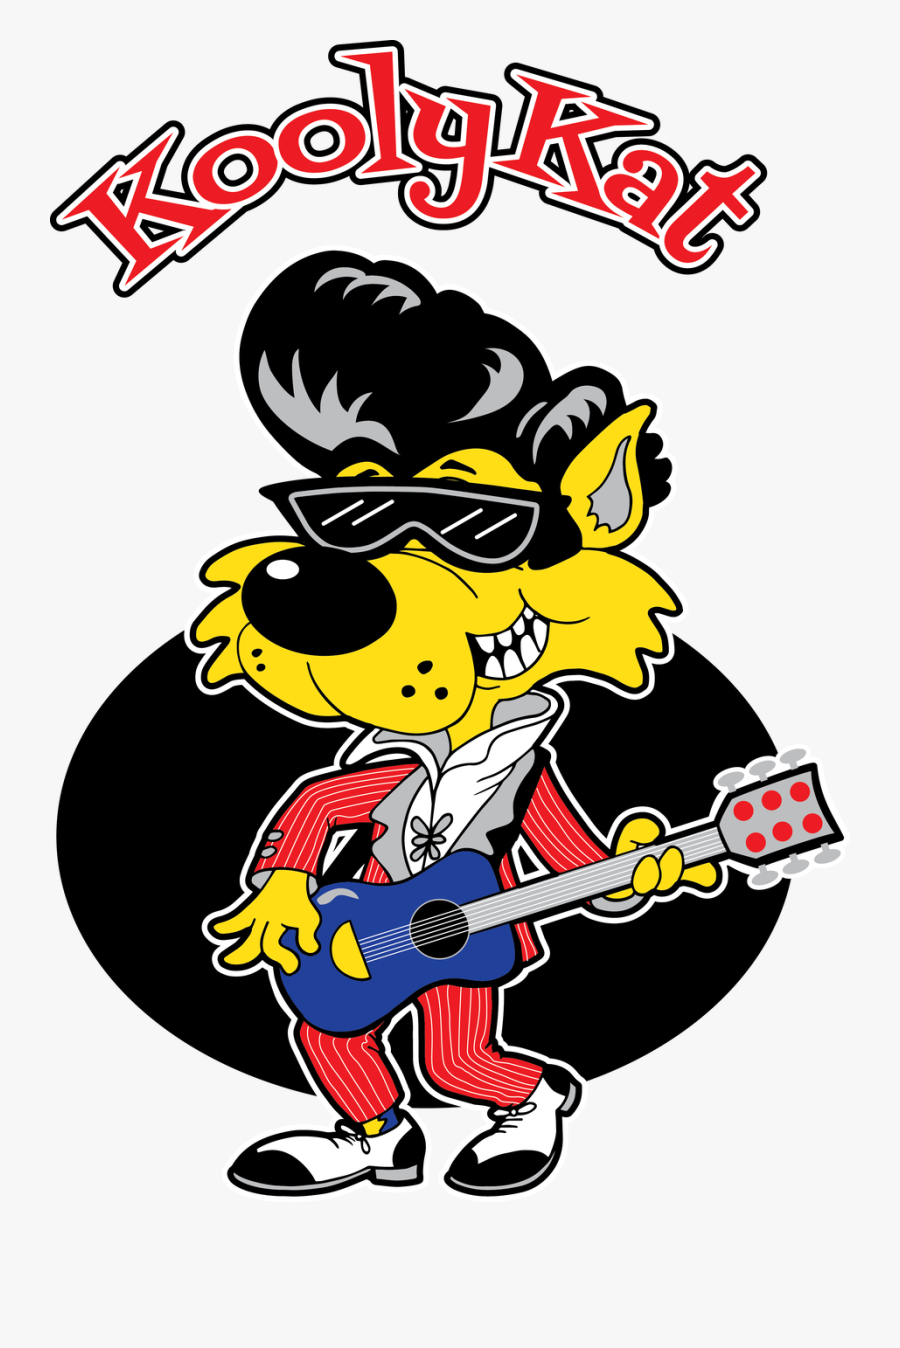 Kooly Kat Logo Nobg - Cartoon, Transparent Clipart